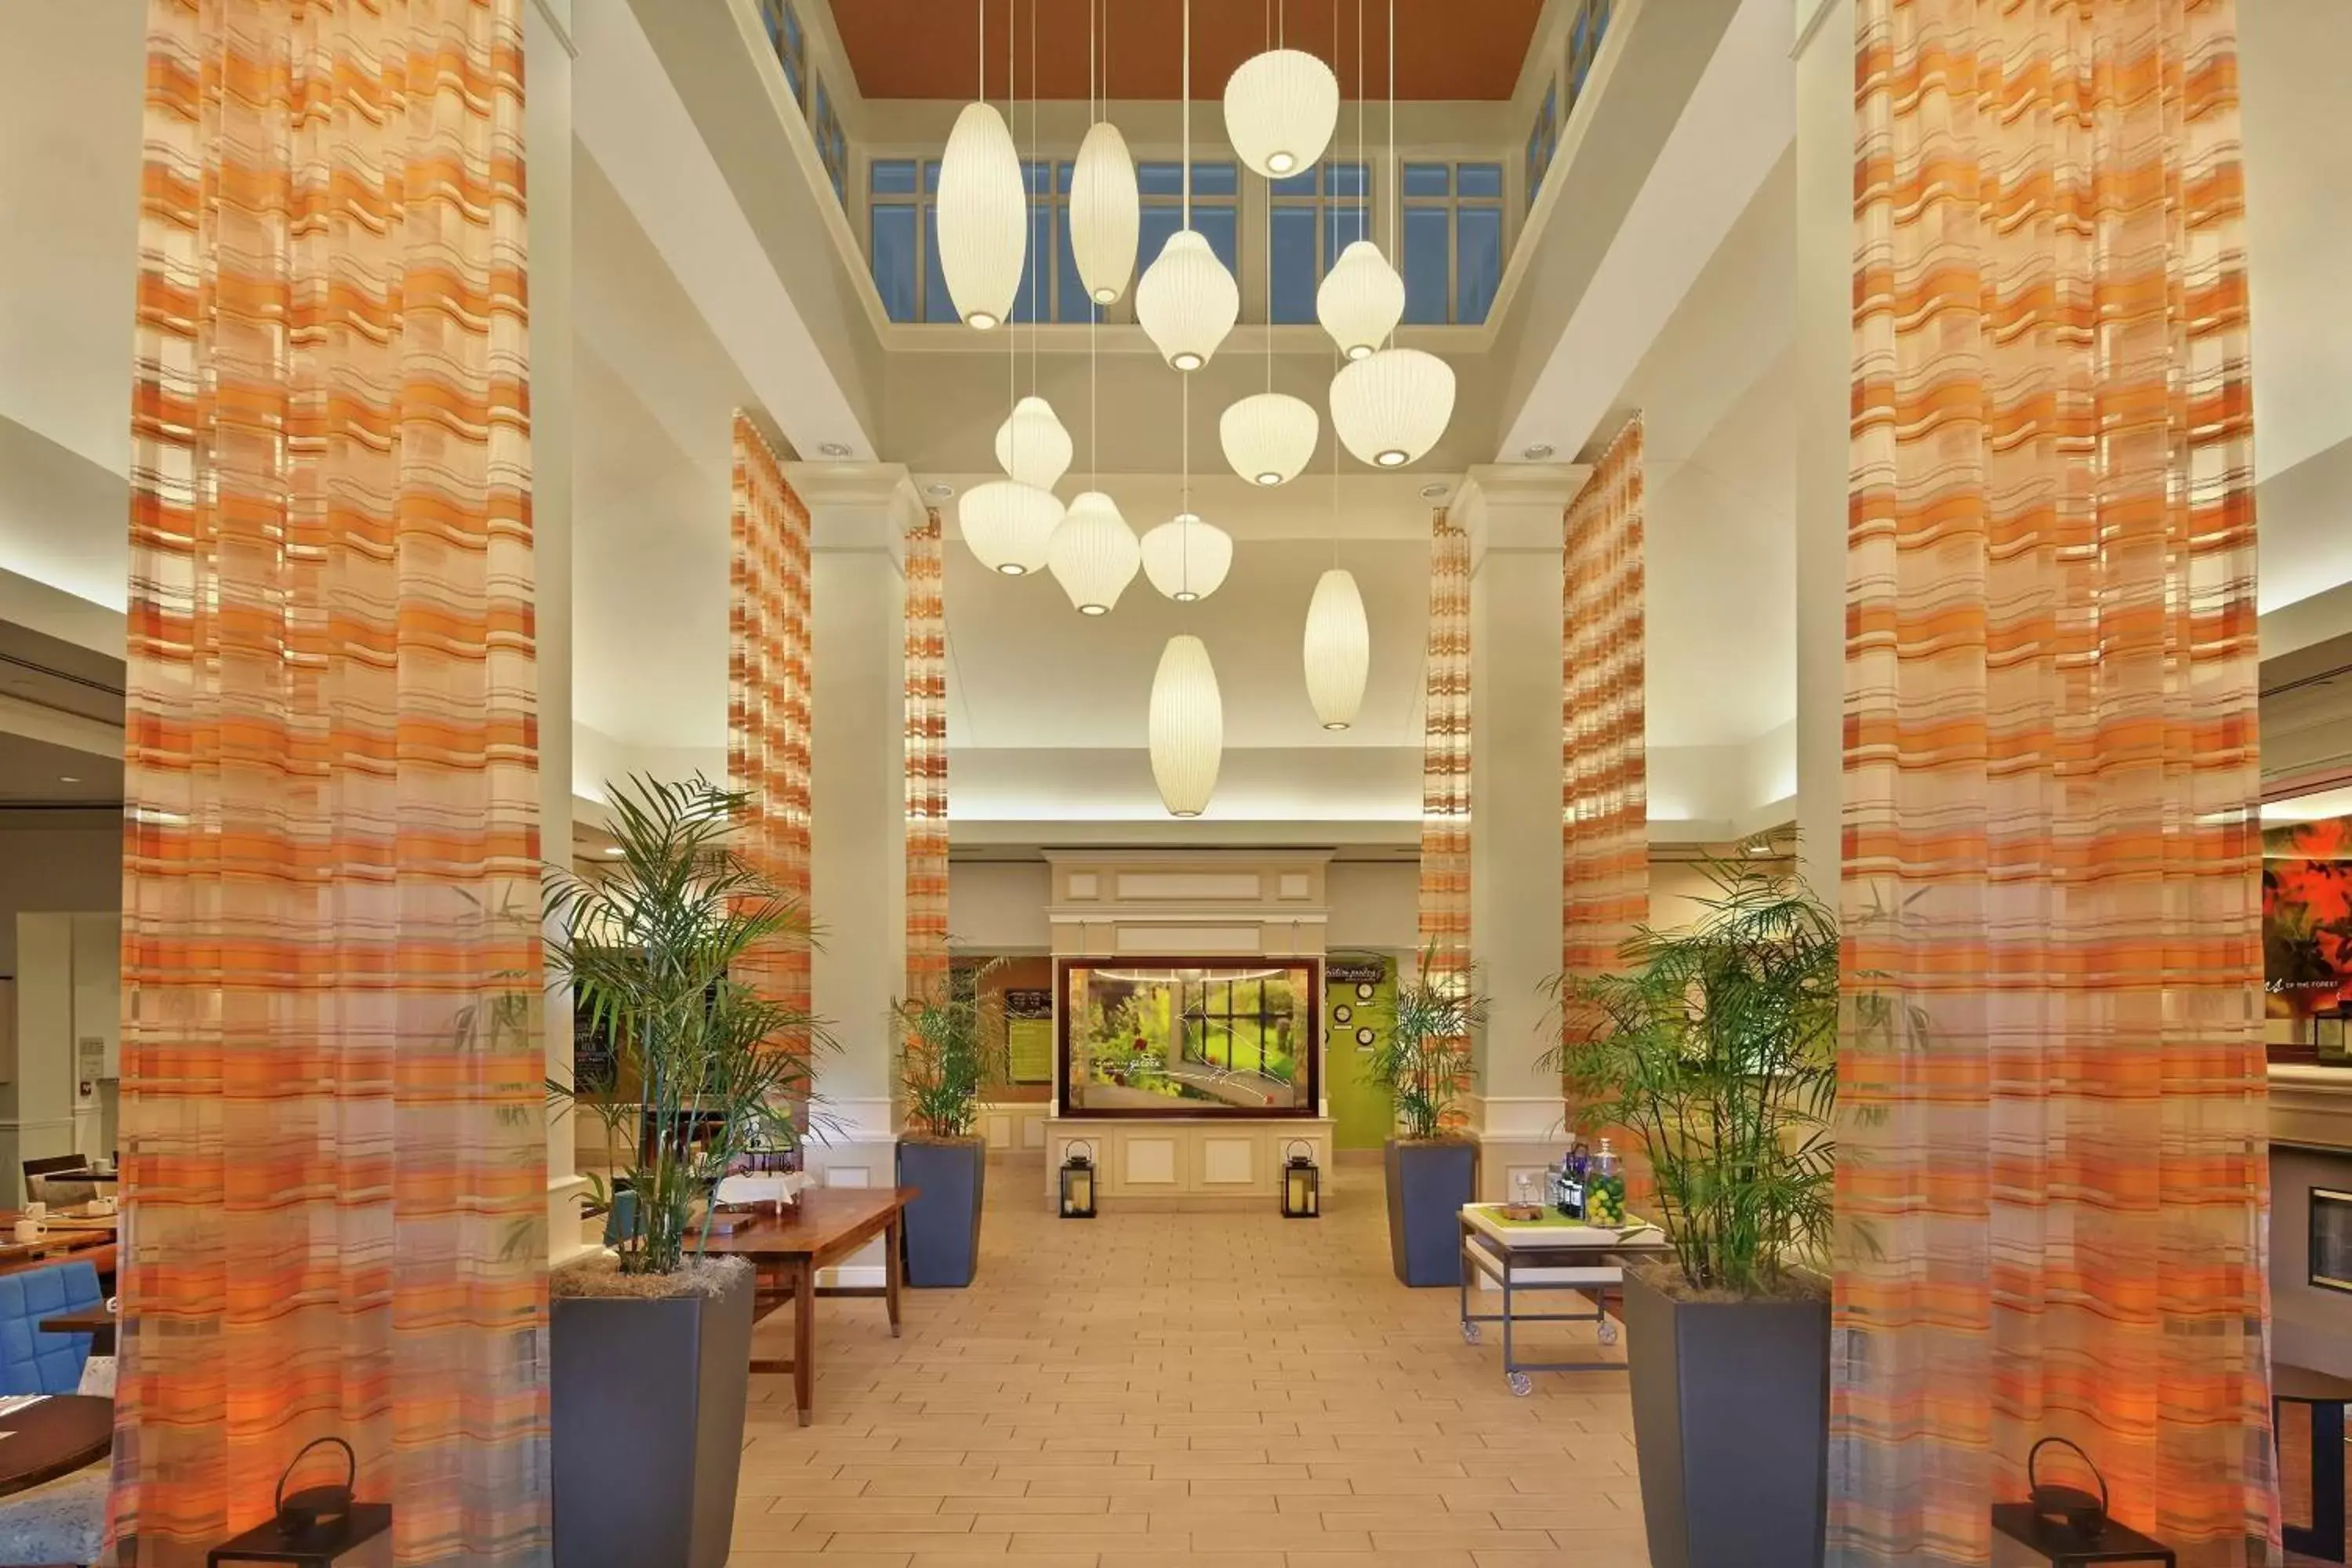 Lobby or reception, Lobby/Reception in Hilton Garden Inn Danbury